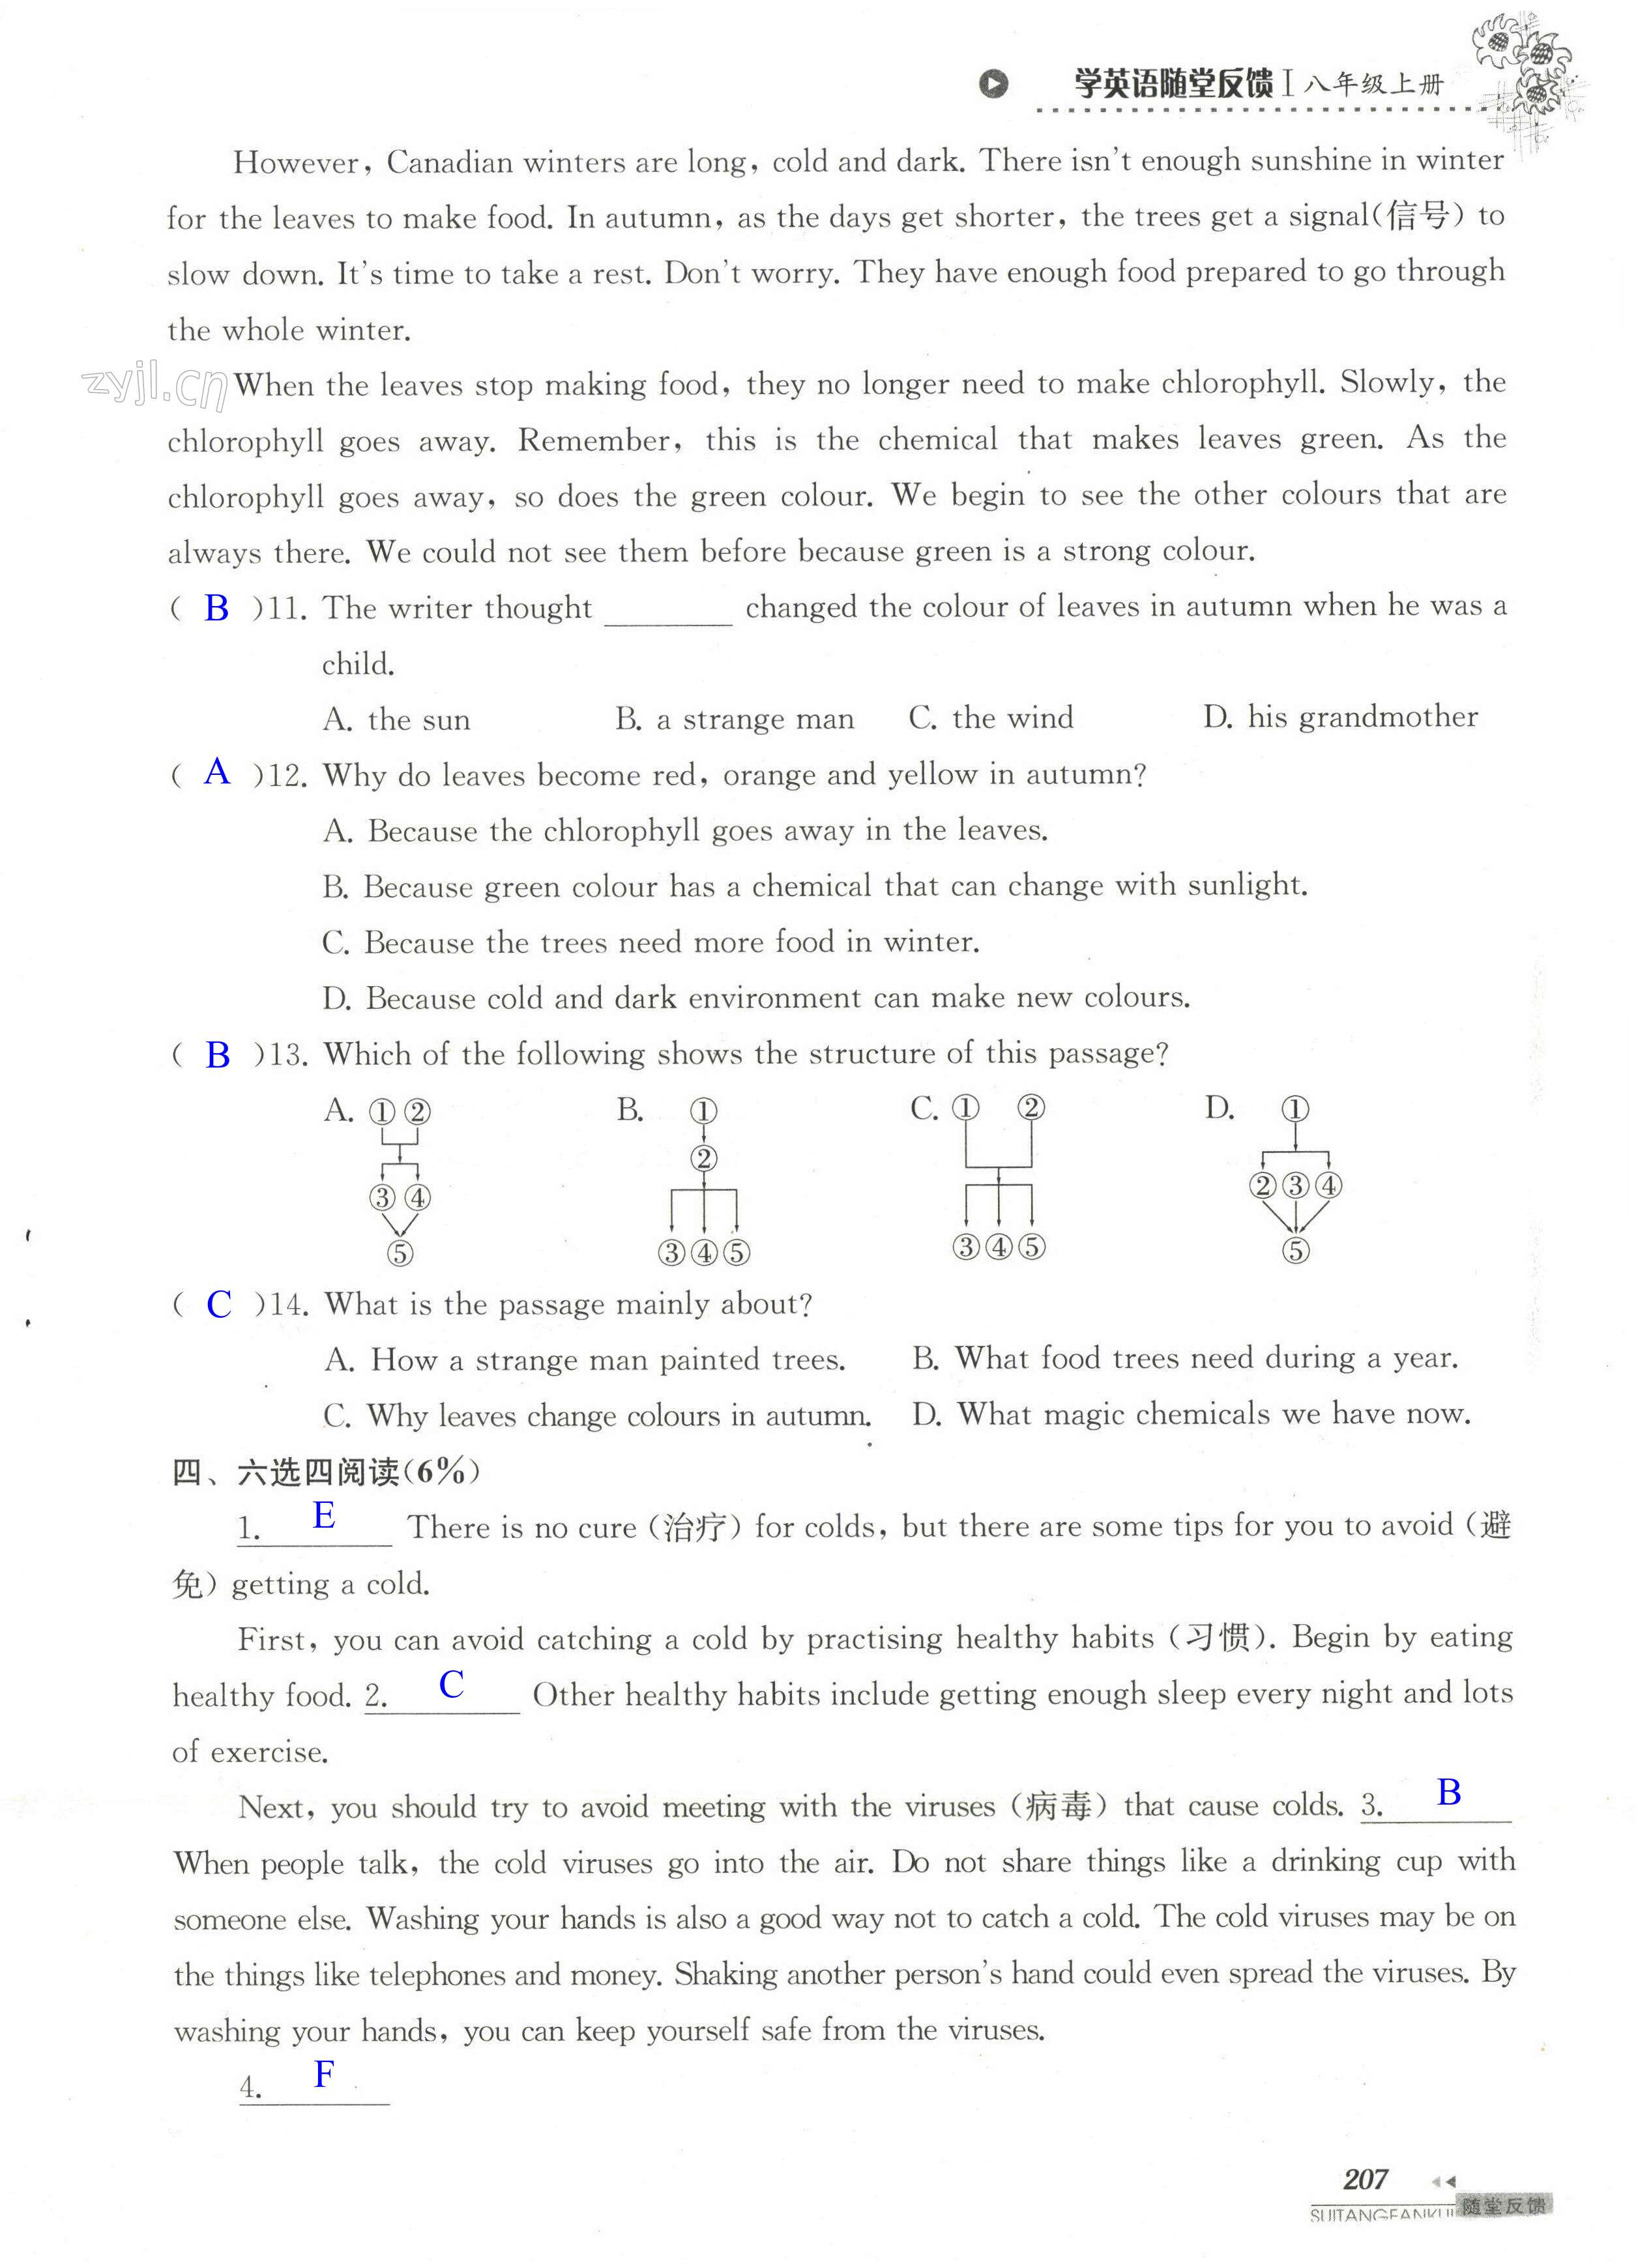 单元综合测试卷 Test for Unit 7 of 8A - 第207页